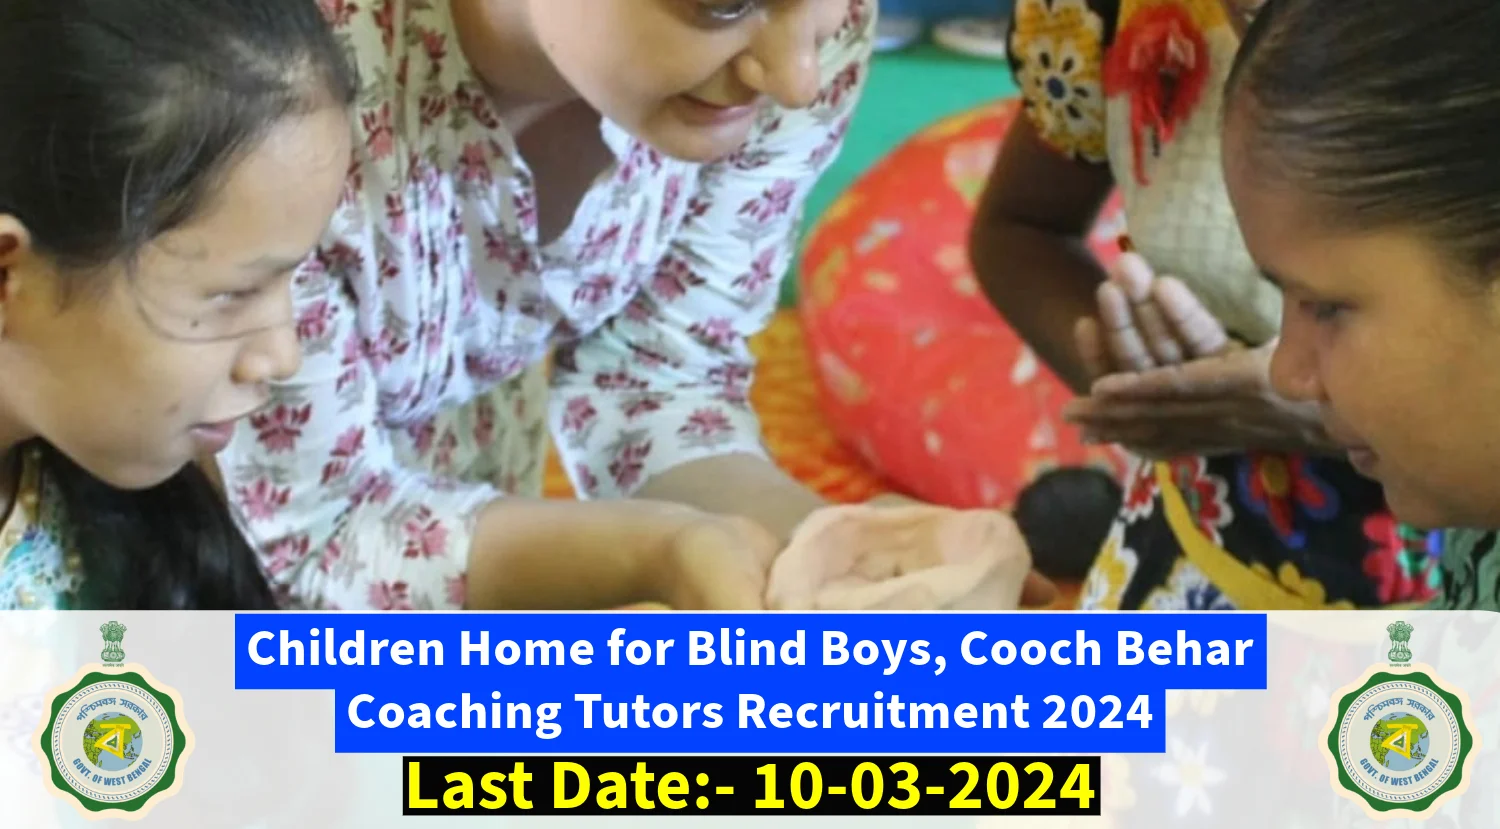 Childrens Home for Blind Boys, Cooch Behar Recruitment 2024